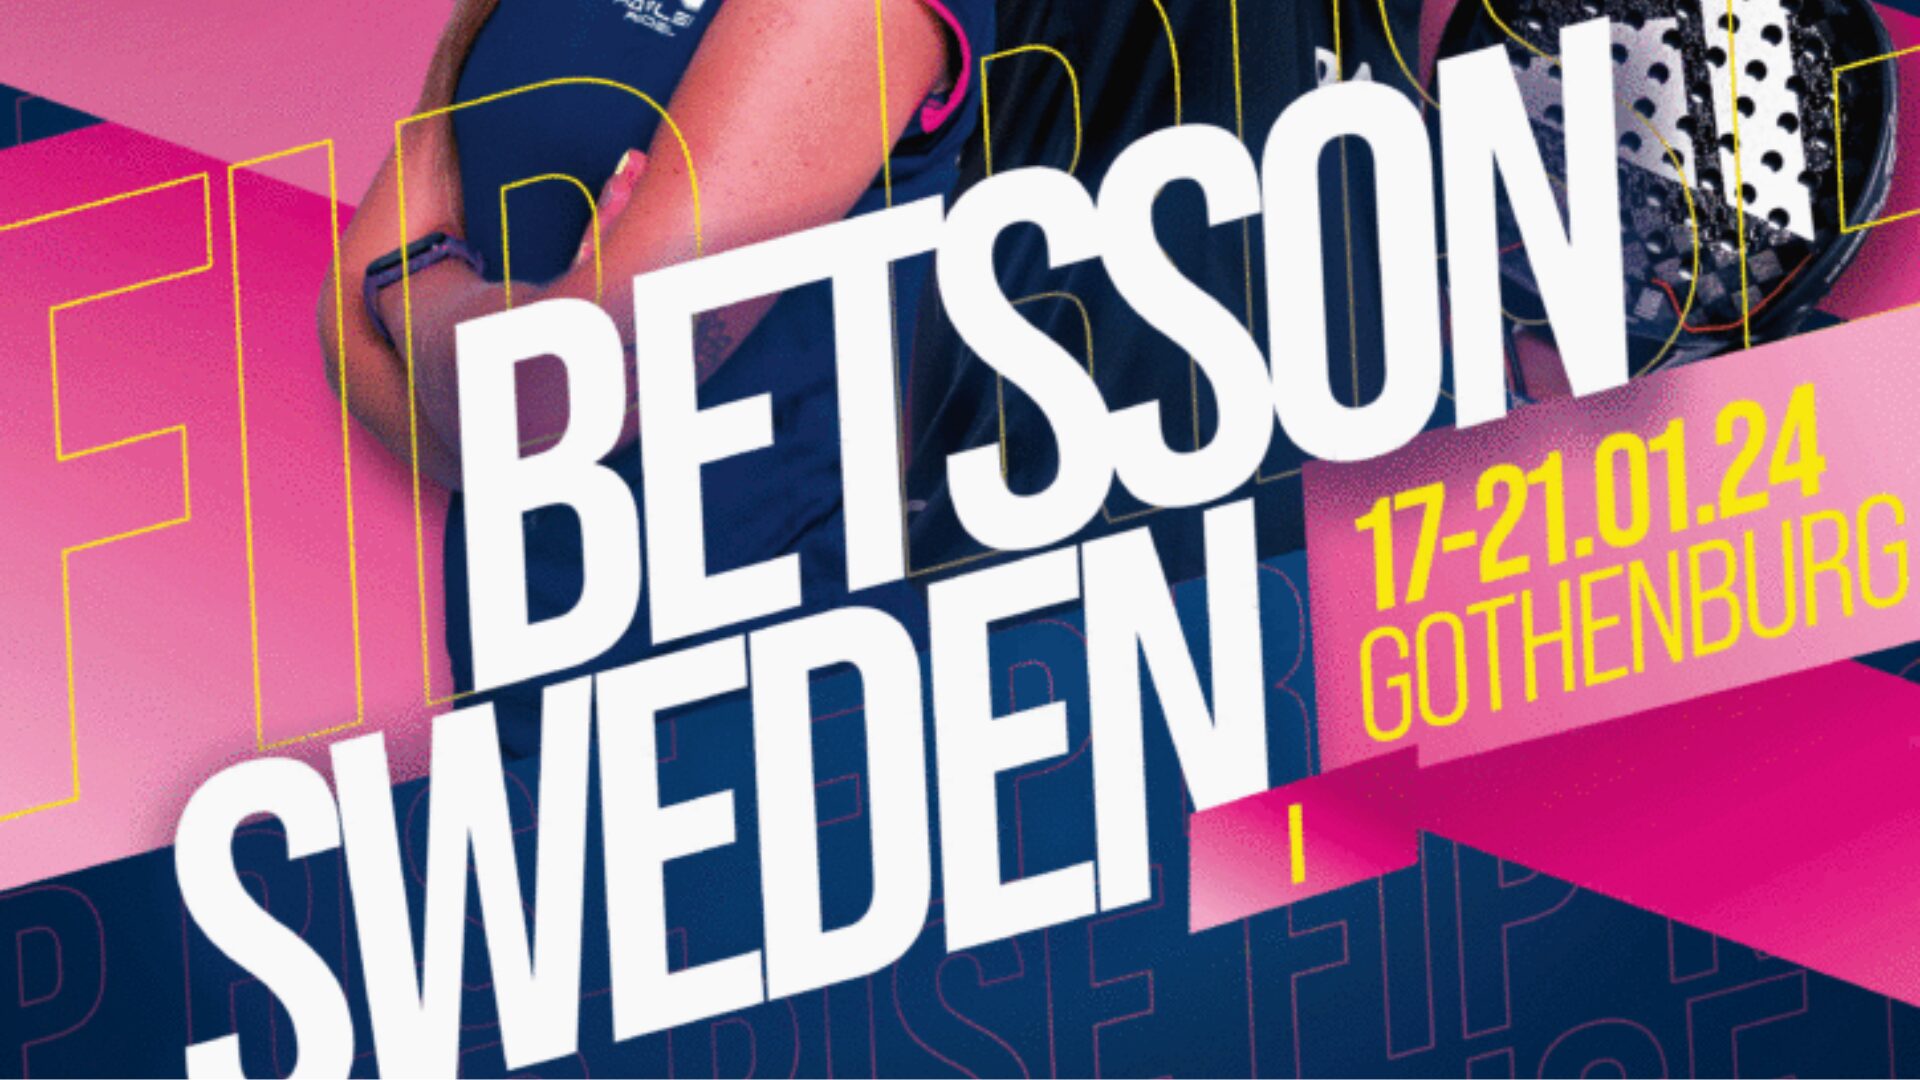 Betsson Zweden FIP Rise januari 2024 Göteborg